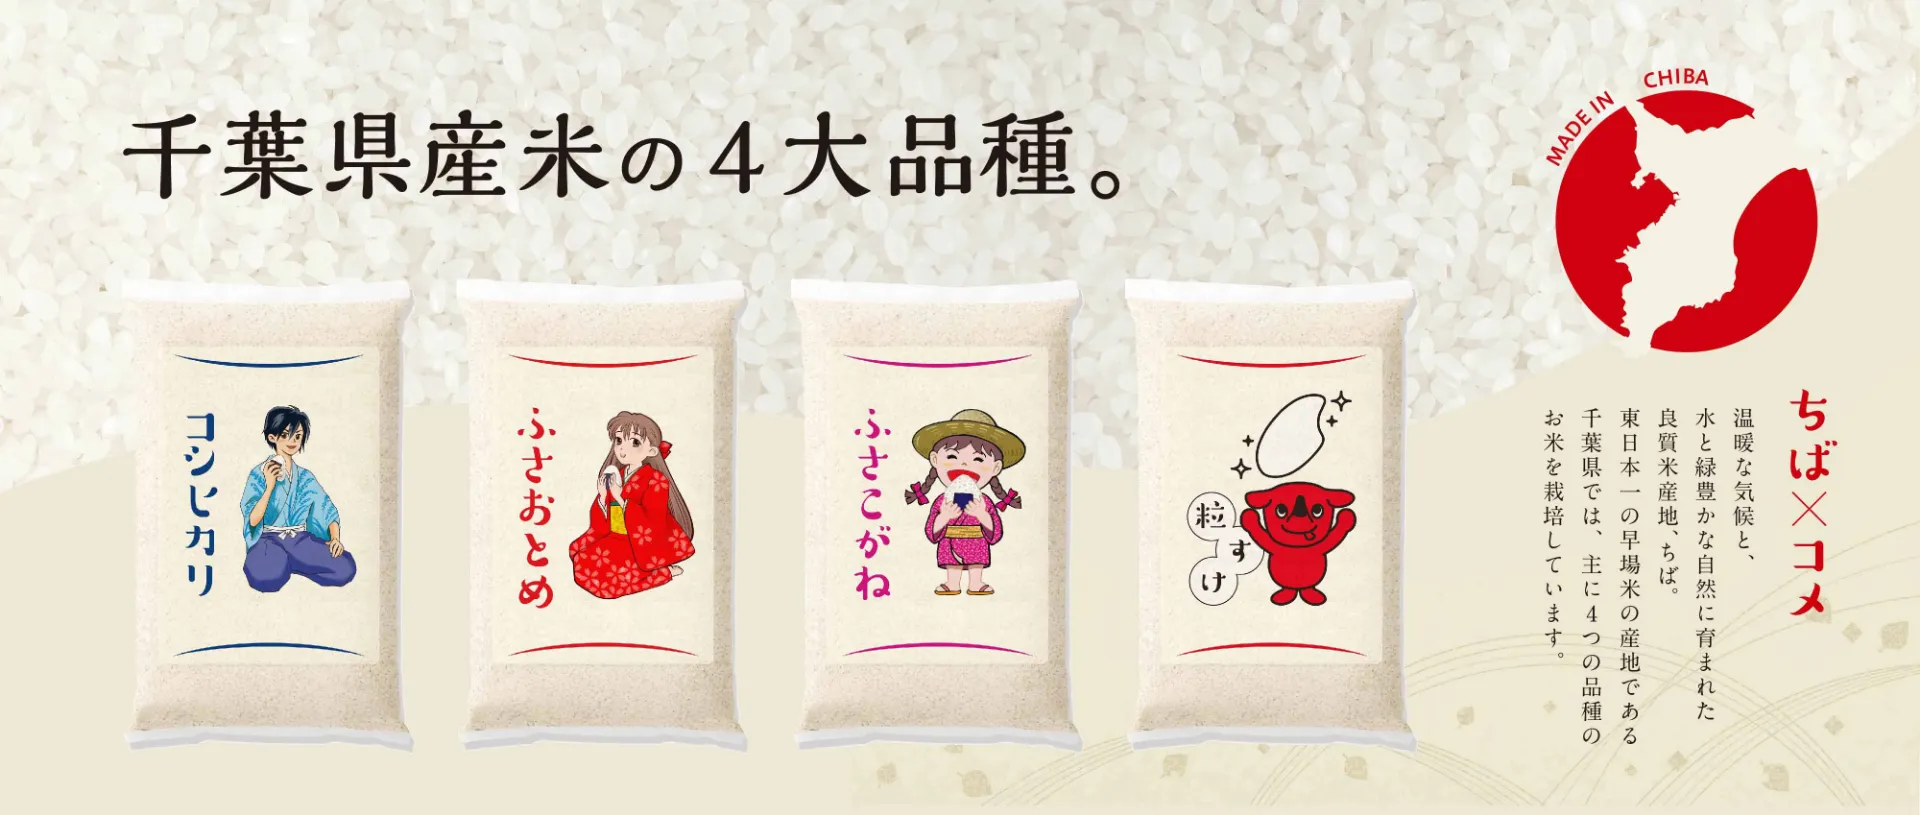 千葉県産米の4大品種